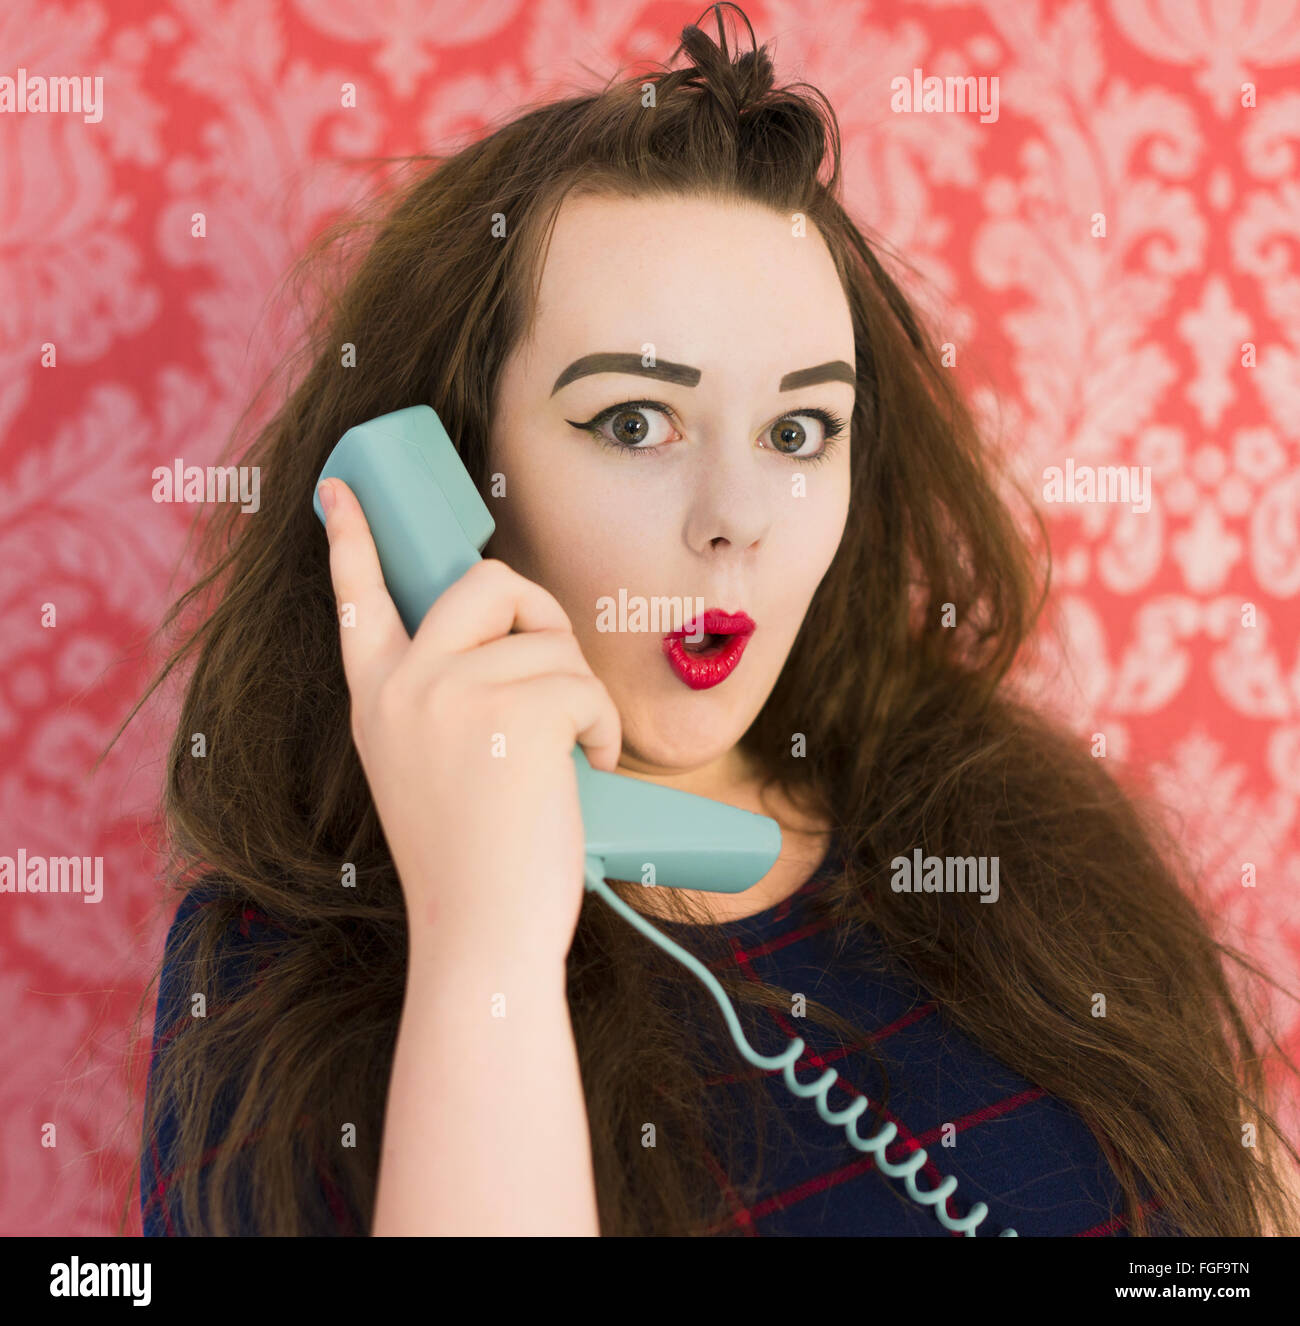 Adolescente sujetando un teléfono azul retro mirando sorprendido contra un fondo de papel tapiz vintage rojo Foto de stock